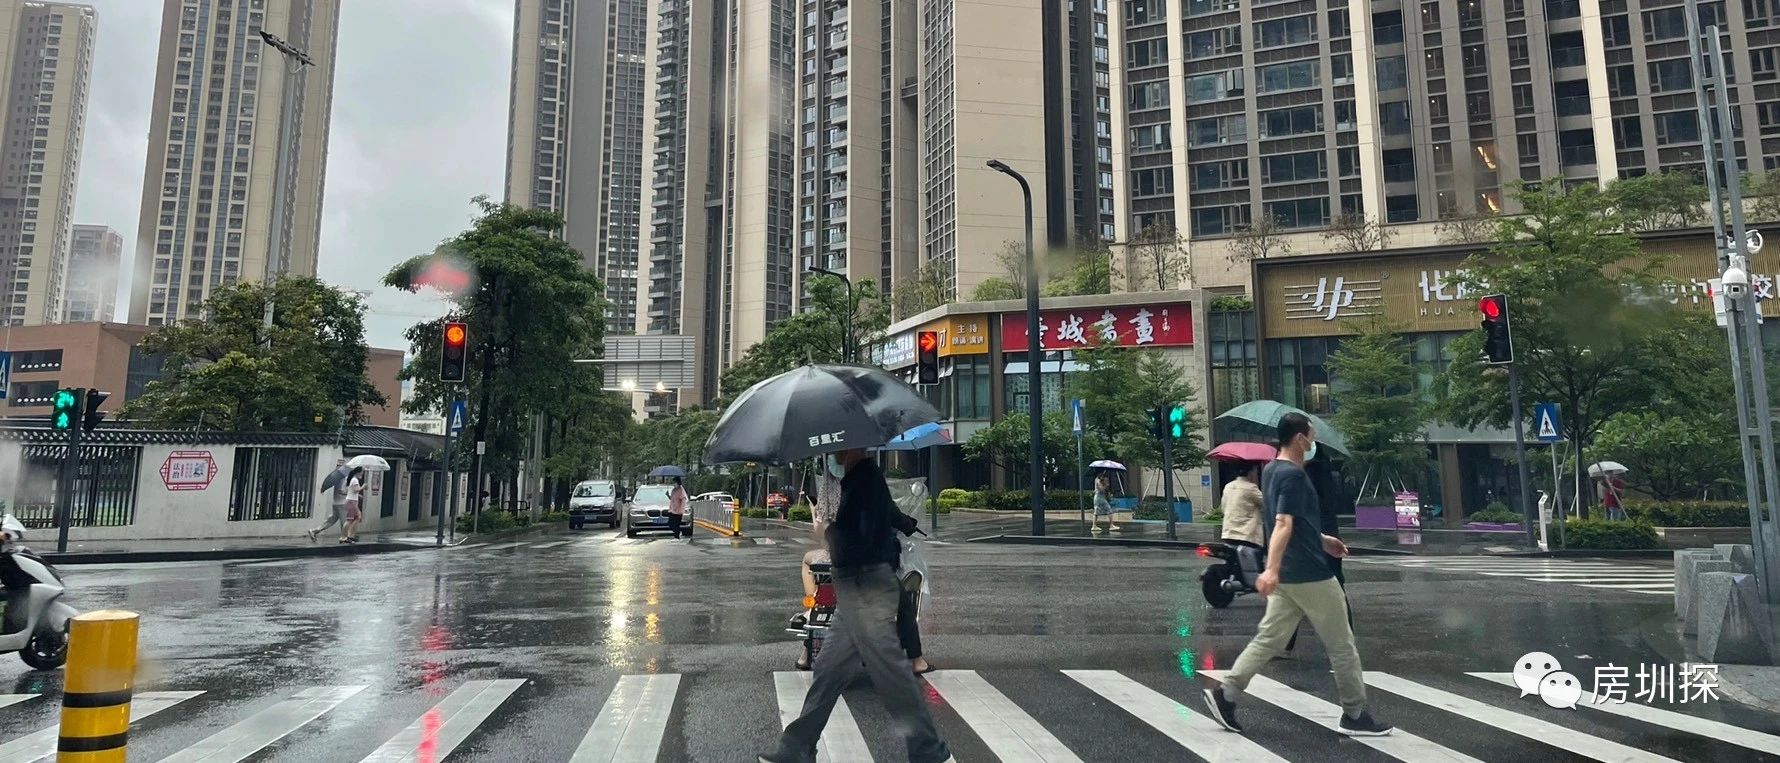 你是不是在等深圳的楼市政策